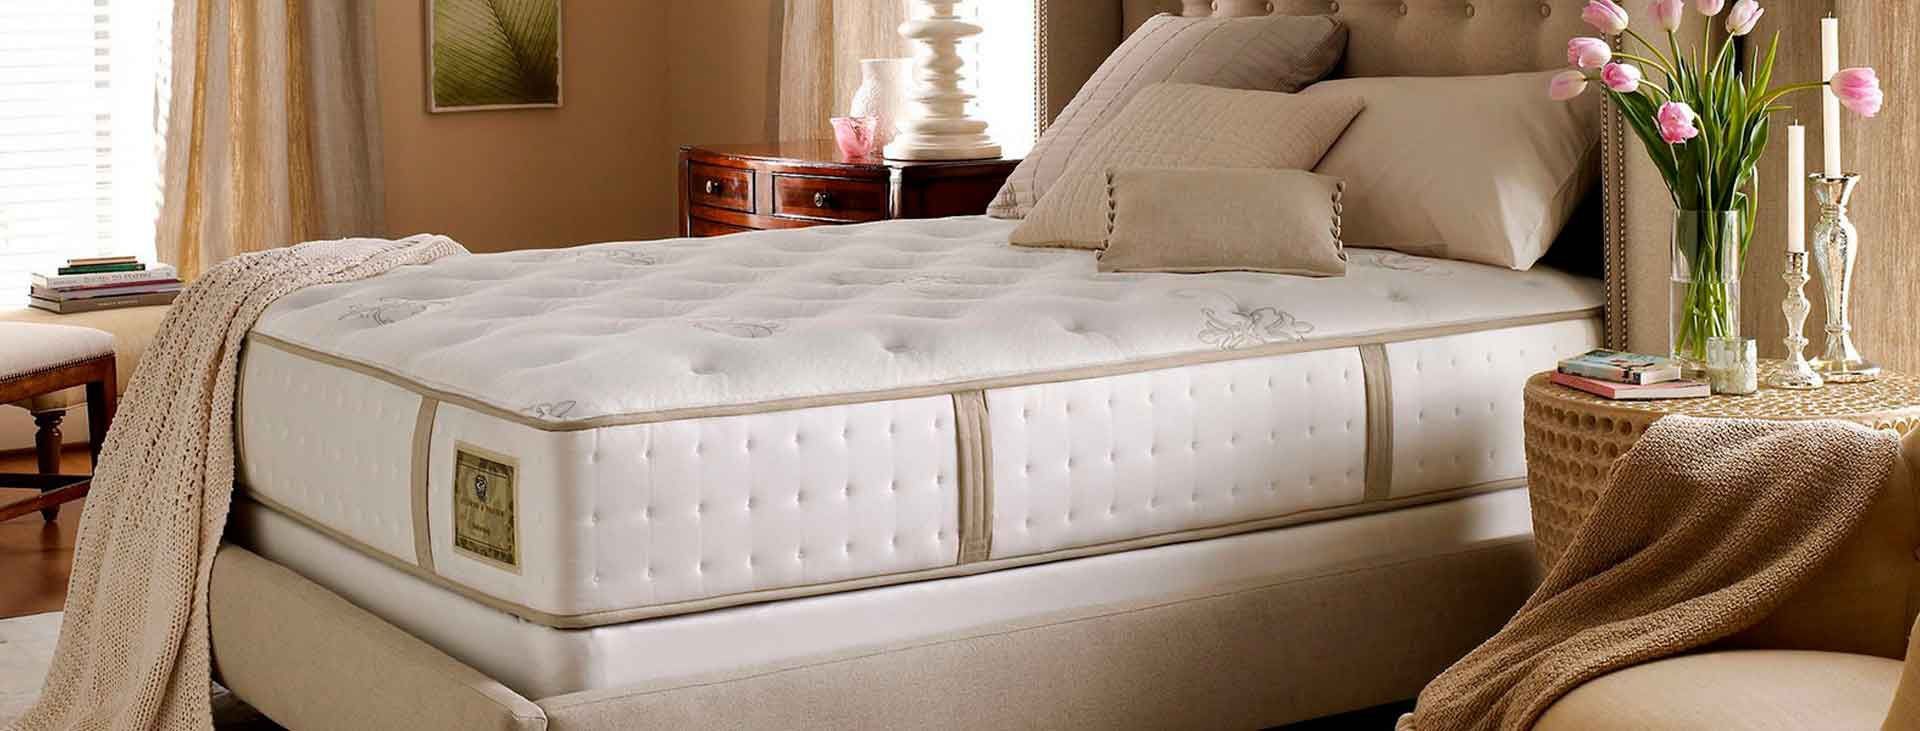 Как правильно выбрать кровать и матрас для спальни